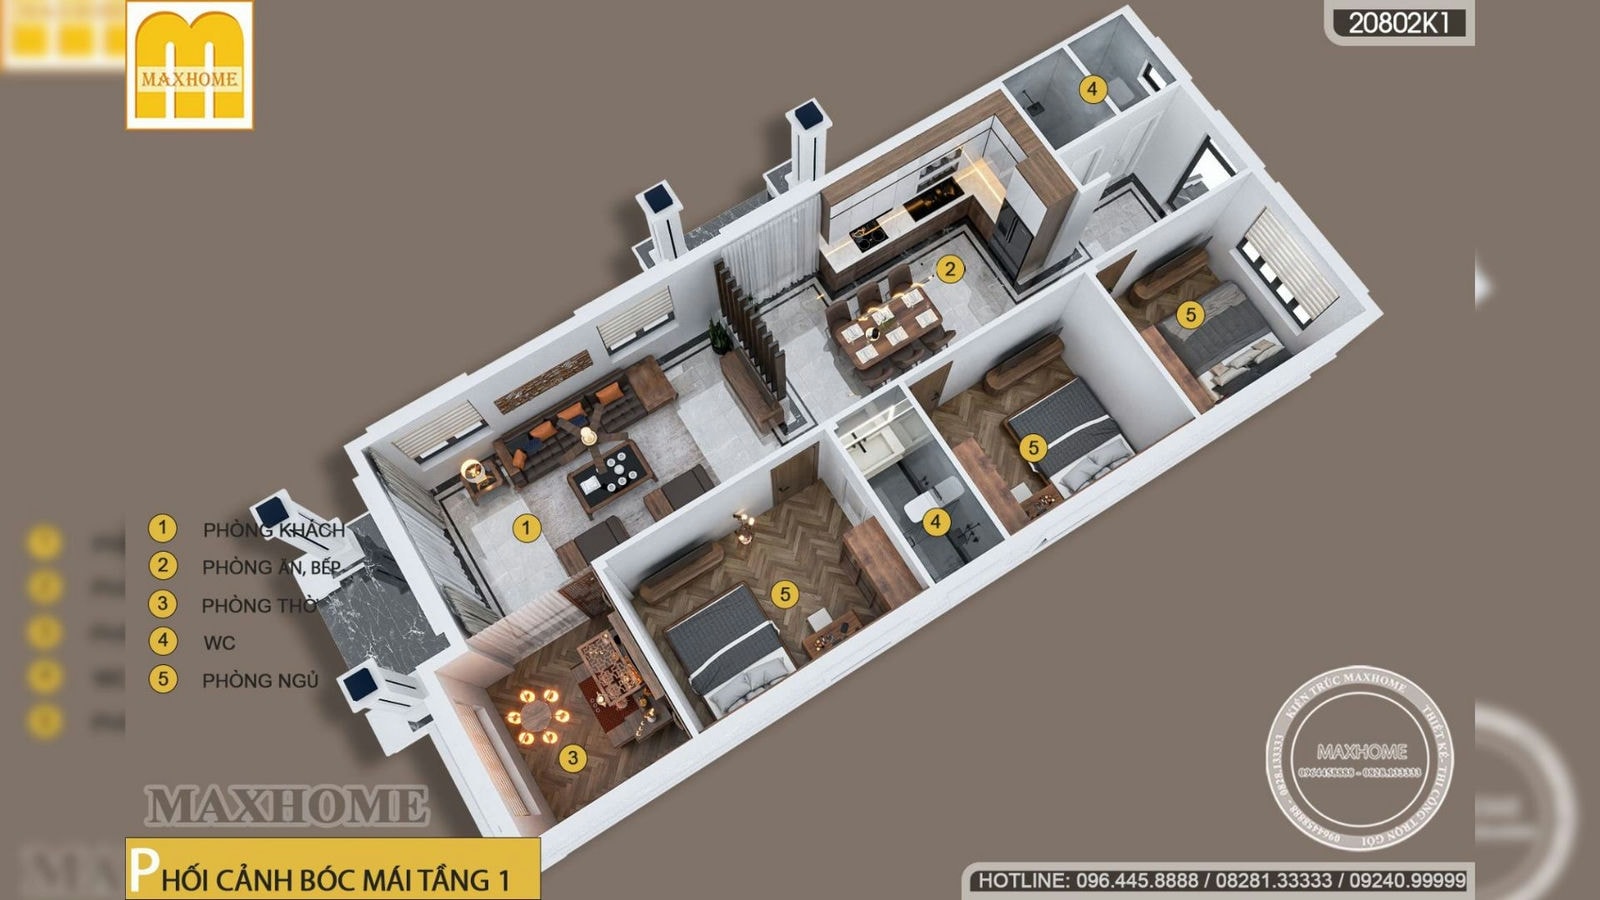 Mẫu nhà 1 tầng mái Nhật 3 phòng ngủ siêu đẹp tại Cà Mau | MH01701